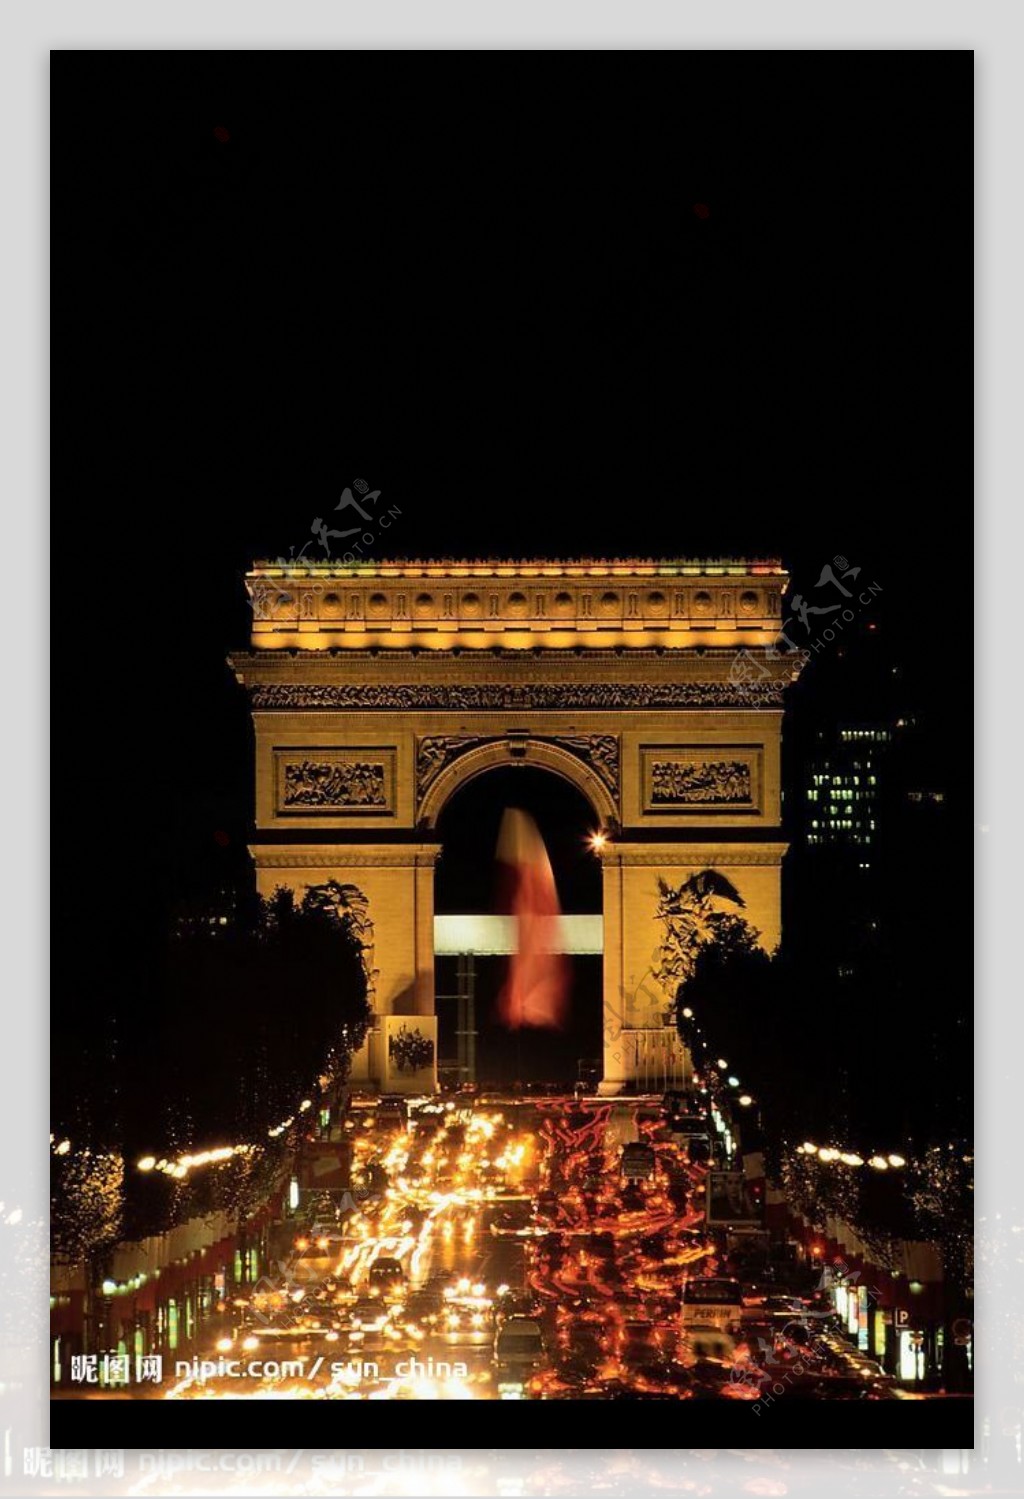 法国凯旋门夜色景观图片